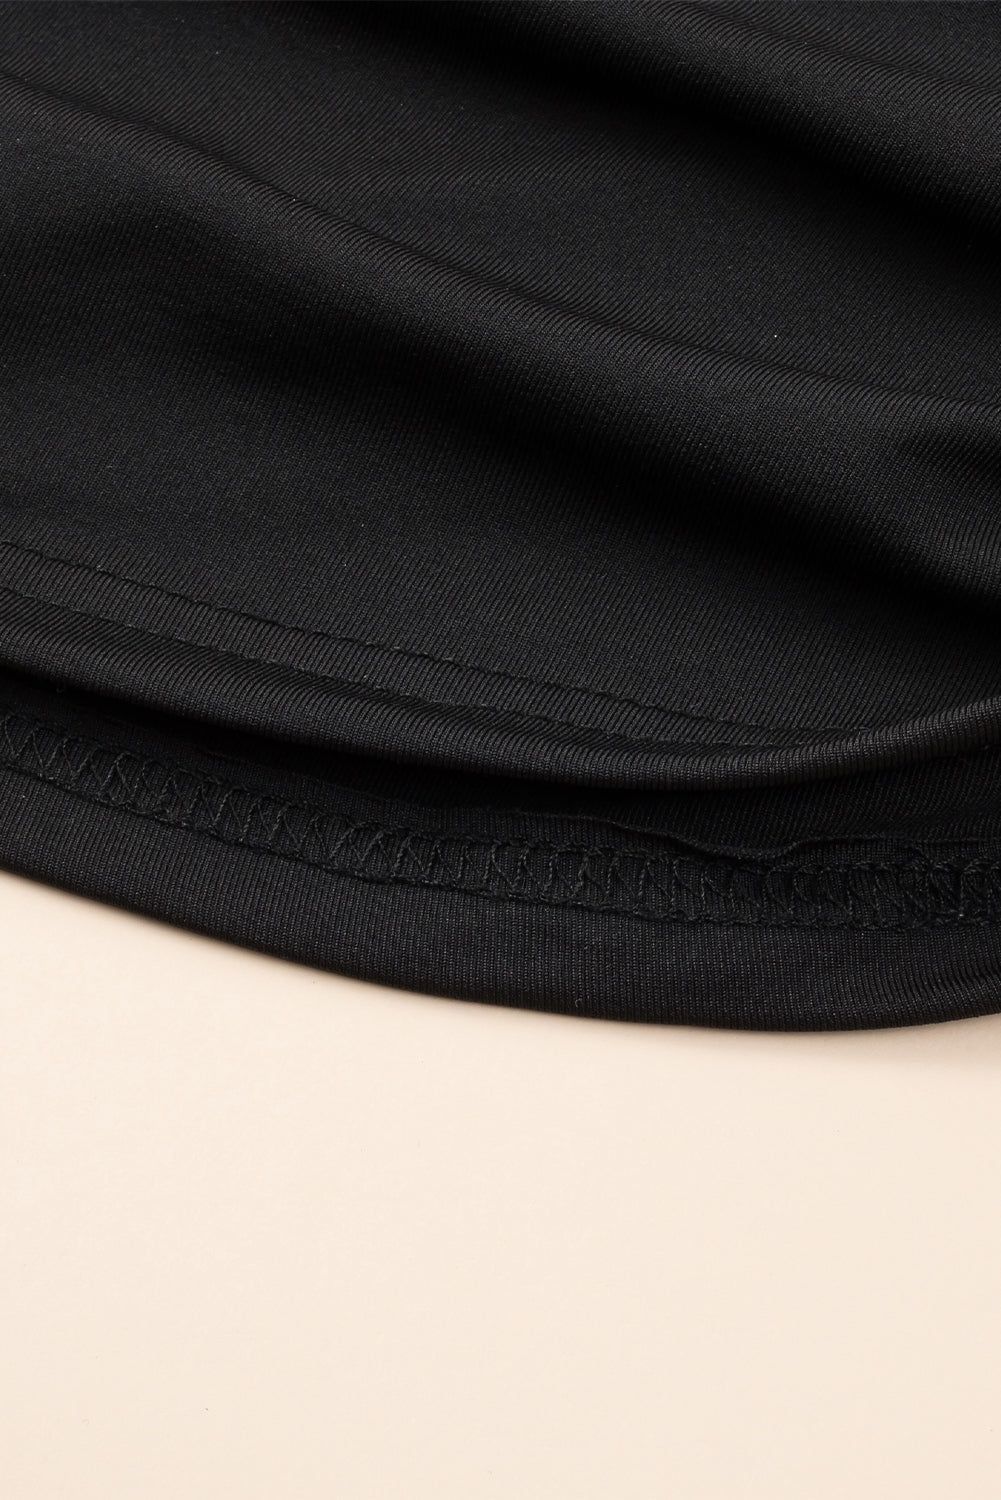 Crna mrežasta majica dugih rukava s visokim ovratnikom i naborima